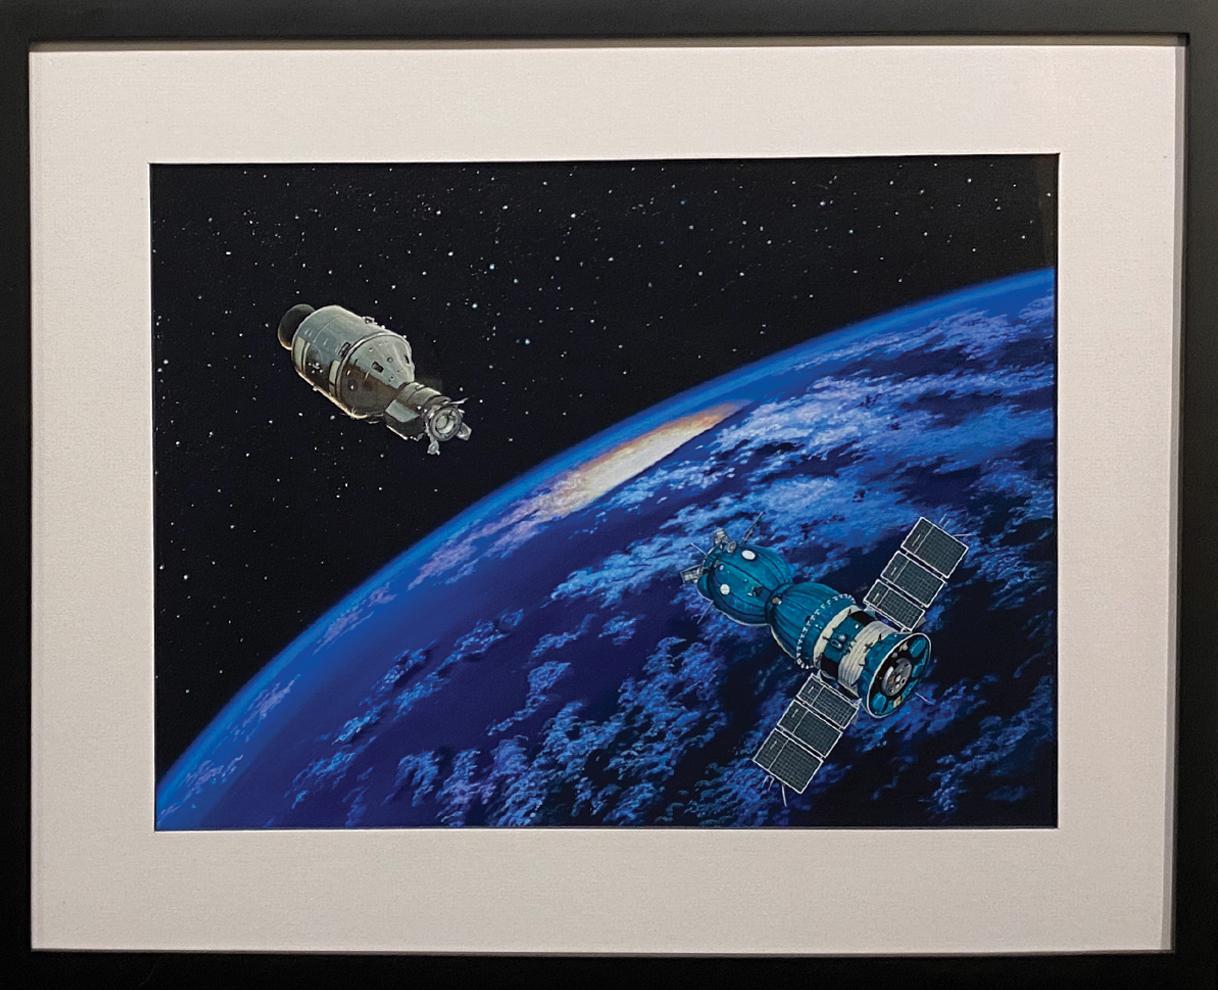 Handshake in Space "Handshake in Space by Sheri Tan" - Painting by Higgins Bond